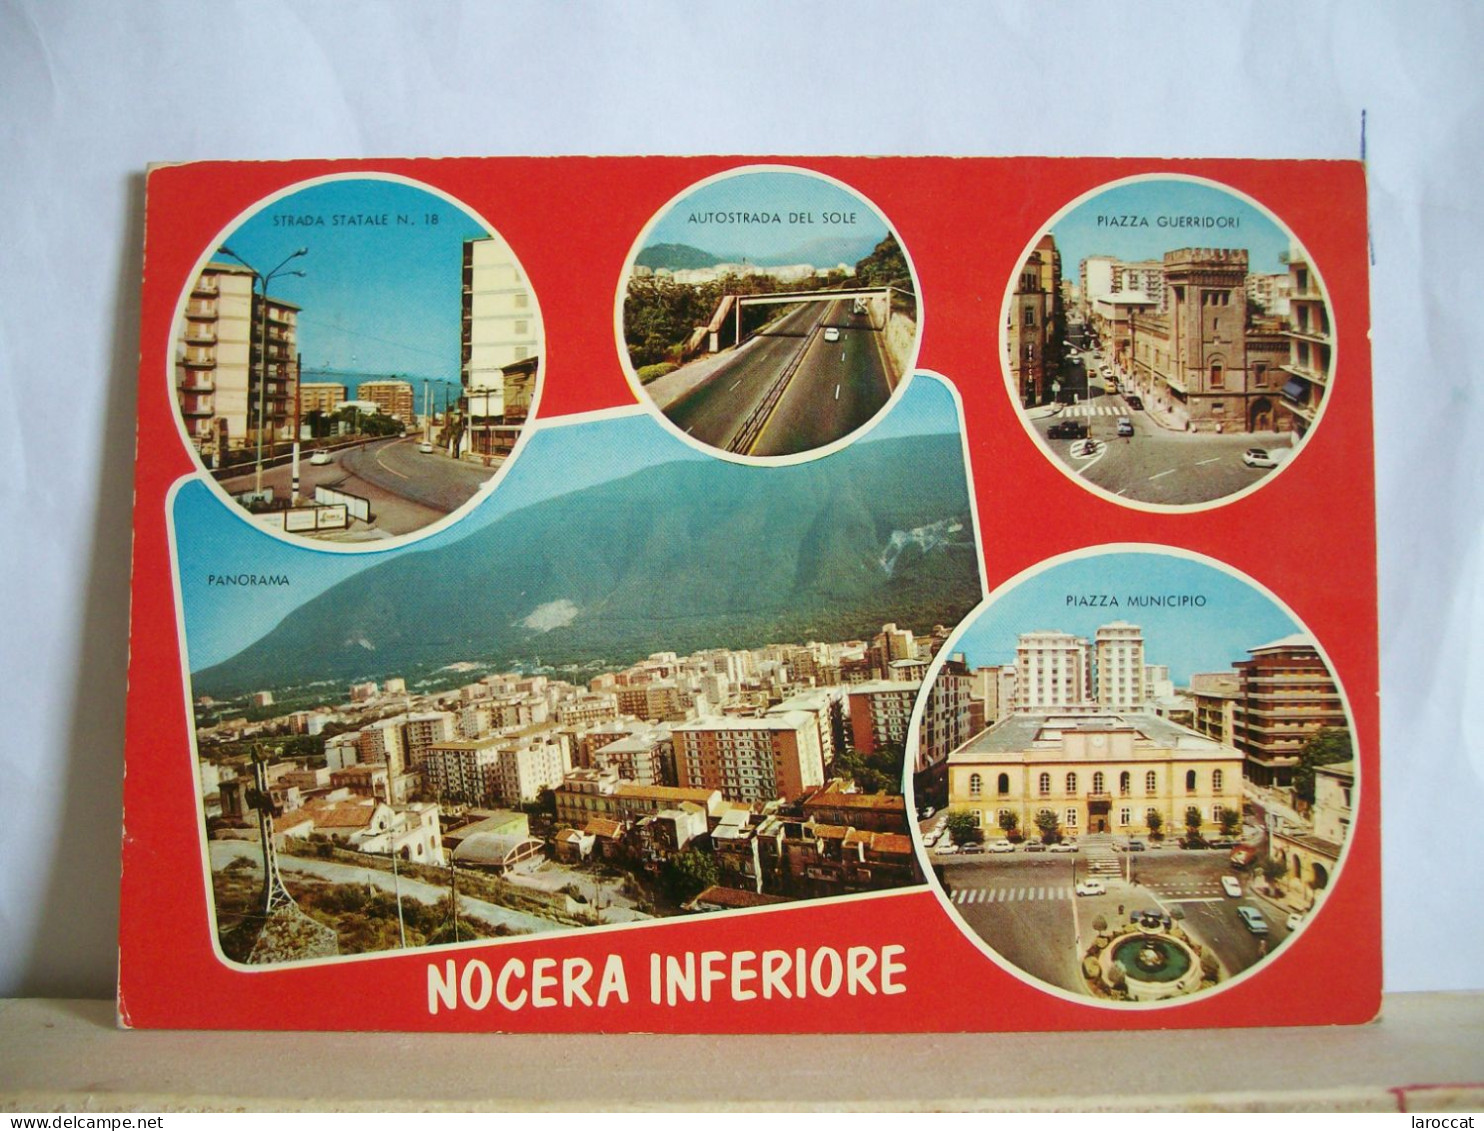 1973 - Salerno - Nocera Inferiore  - Piazza Municipio E Guerridori - Autostrada Del Sole  - Fontana - Vedute  - 2 Scans. - Salerno